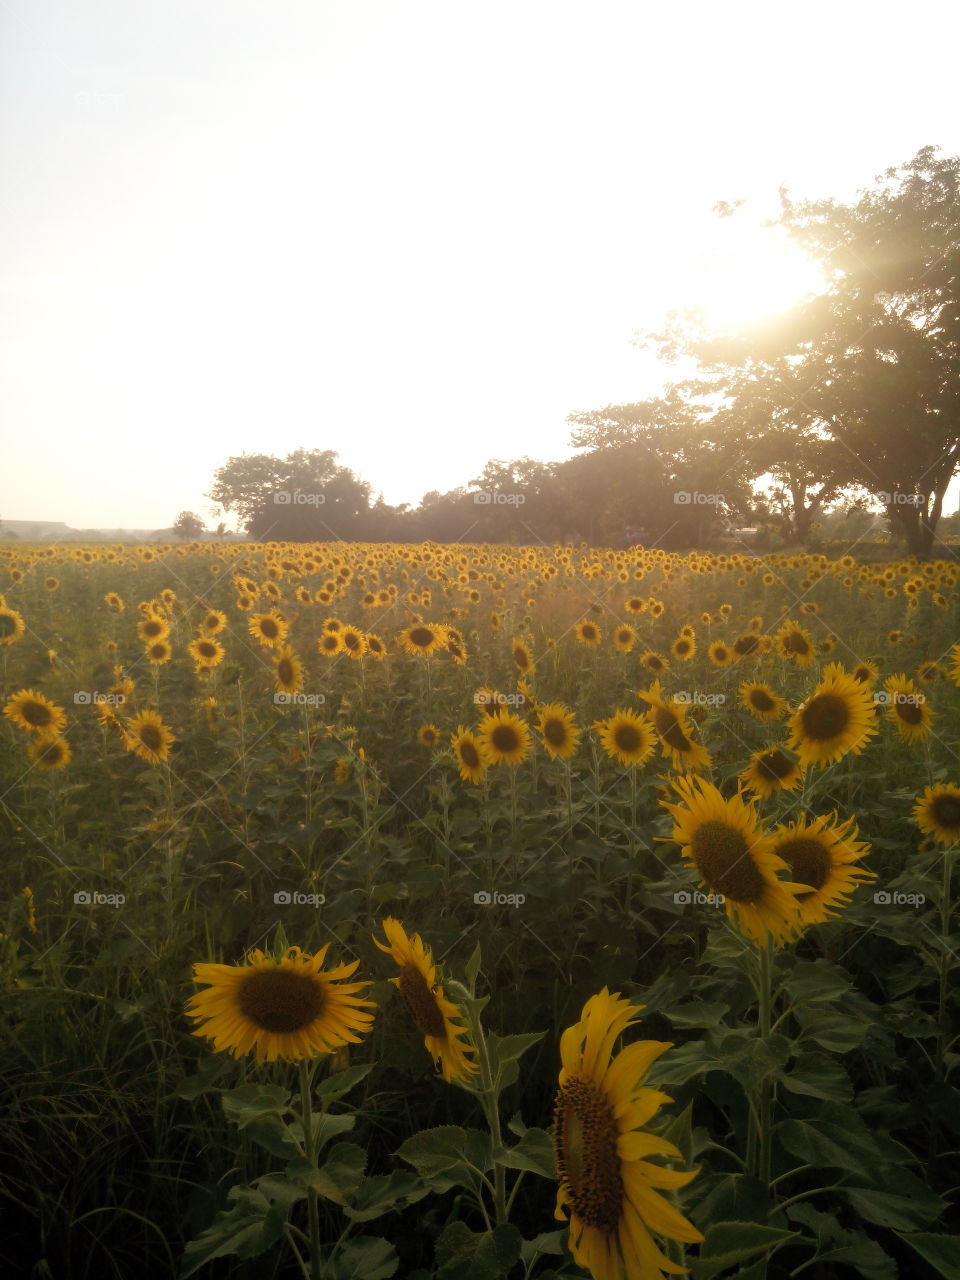 Sunflower. Sunflowers